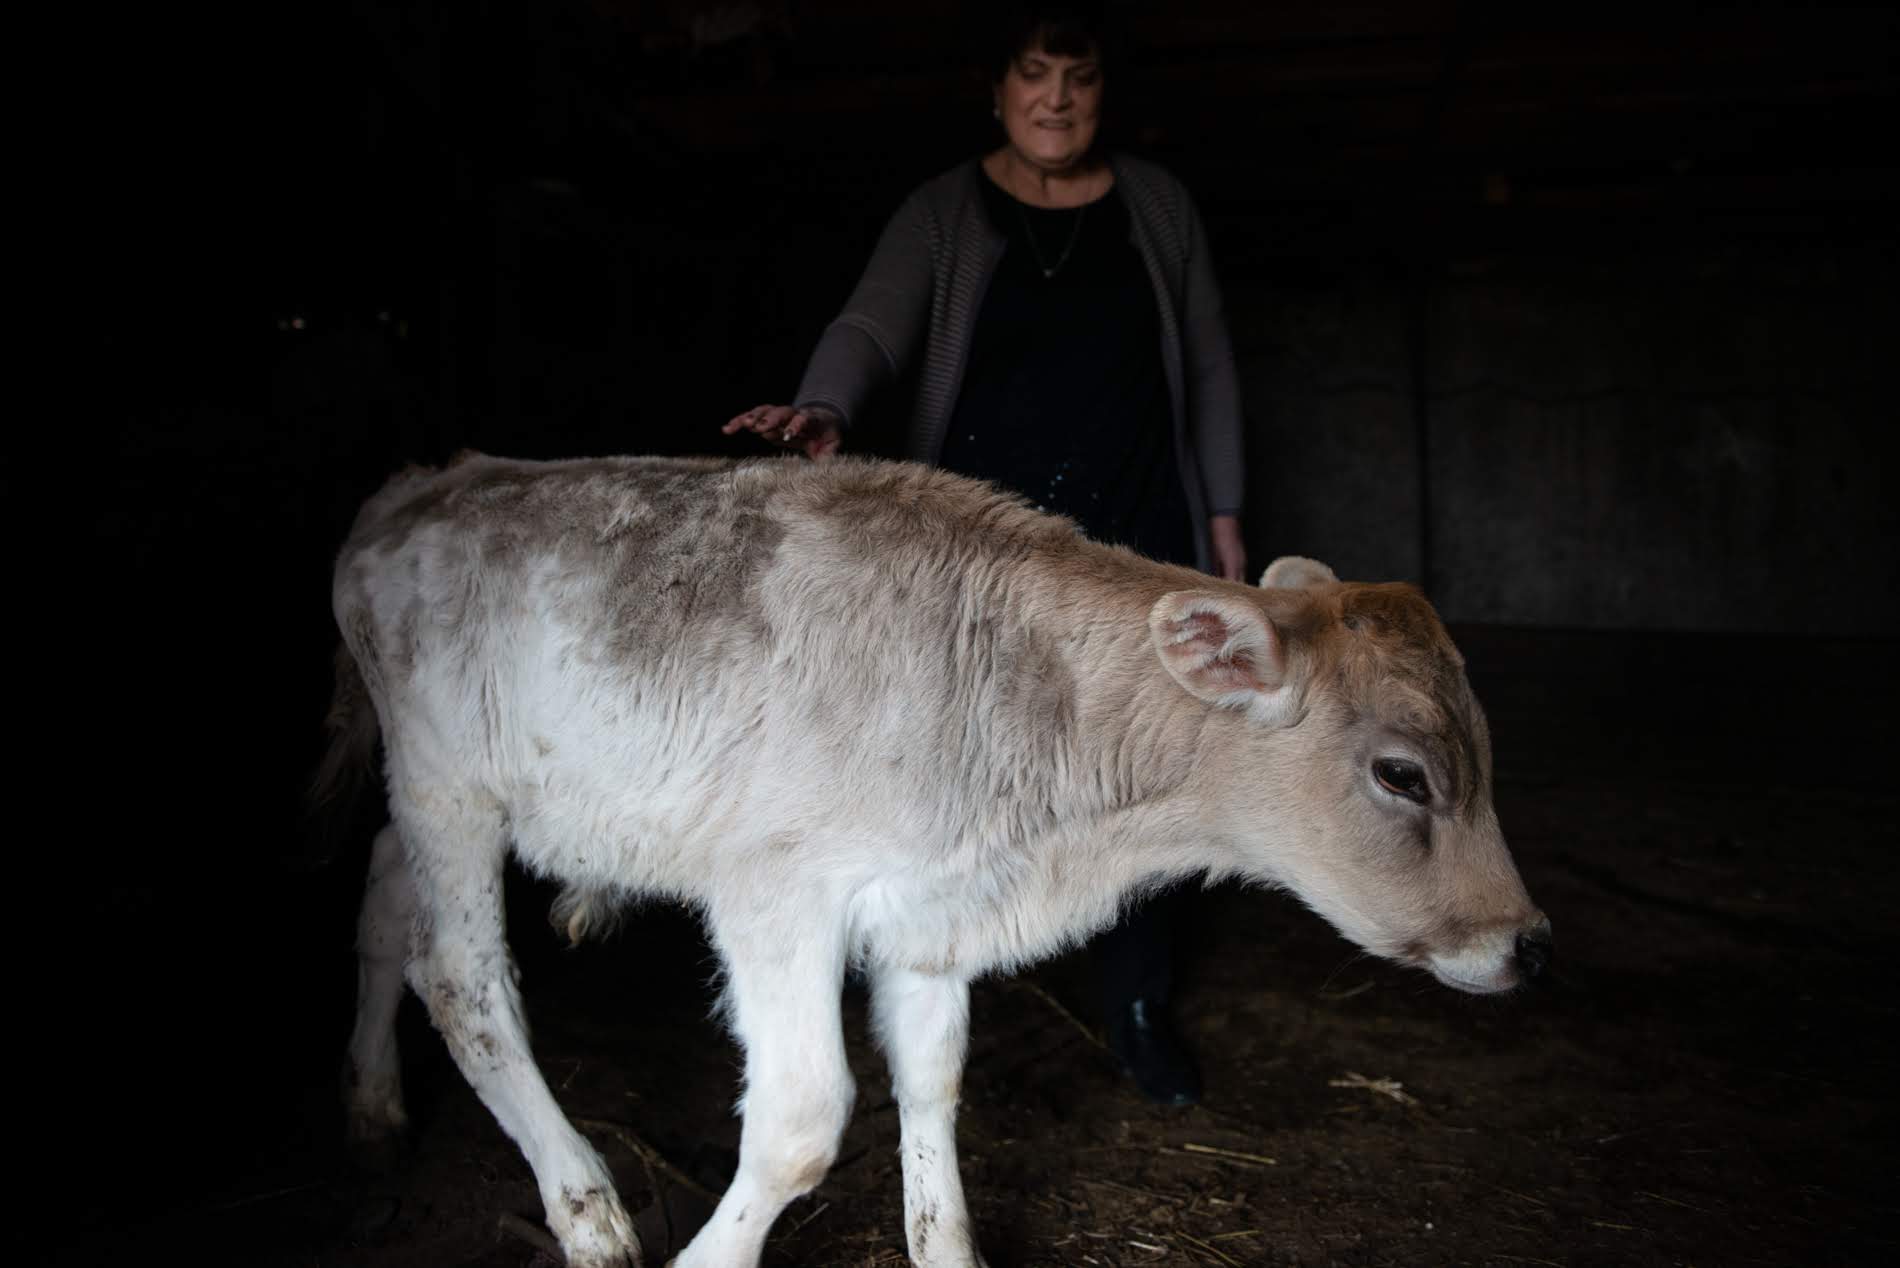 В 2011 году семья Нуну приобрела около 100 голов крупного рогатого скота, однако из-за высыхания пастбищ и жаркого лета инициатива не оправдала себя. Сейчас у них осталось только 13 голов скота. Фото: Тамуна Чкареули / OC Media